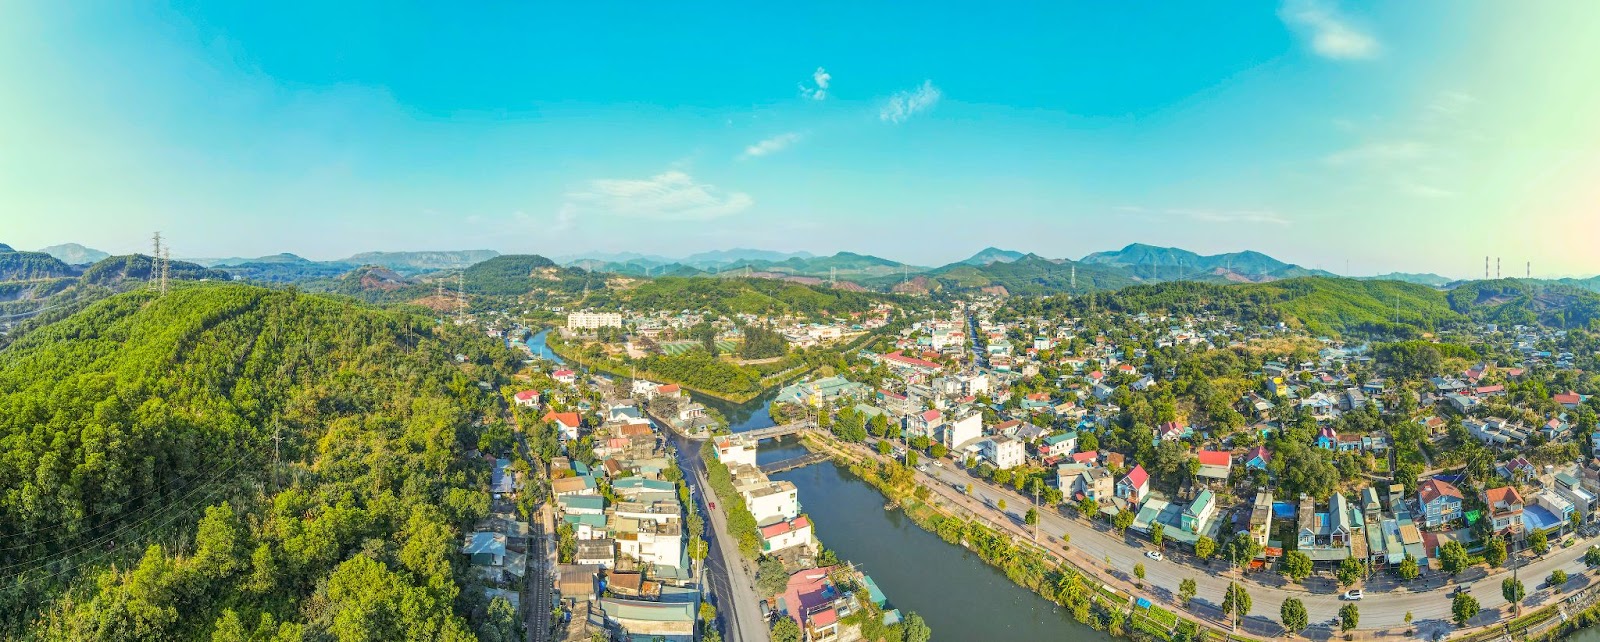 Phường rộng nhất Việt Nam, gấp 22 lần quận Hoàn Kiếm - Ảnh 2.